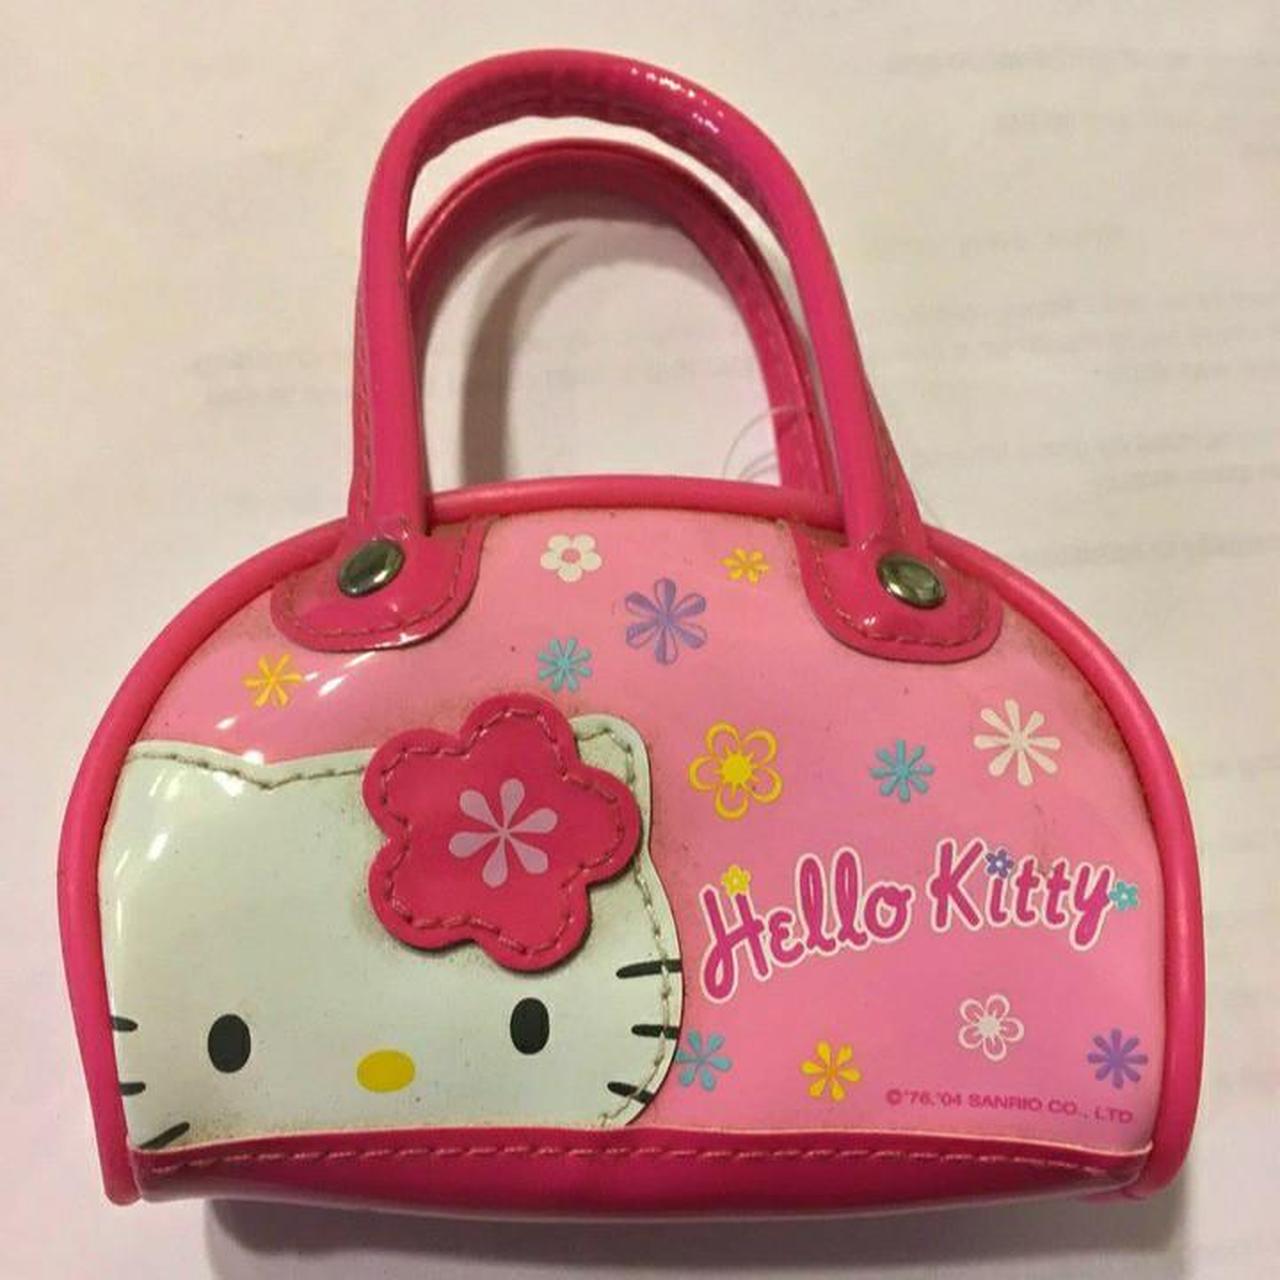 Sanrio Hello Kitty miniature purse 4